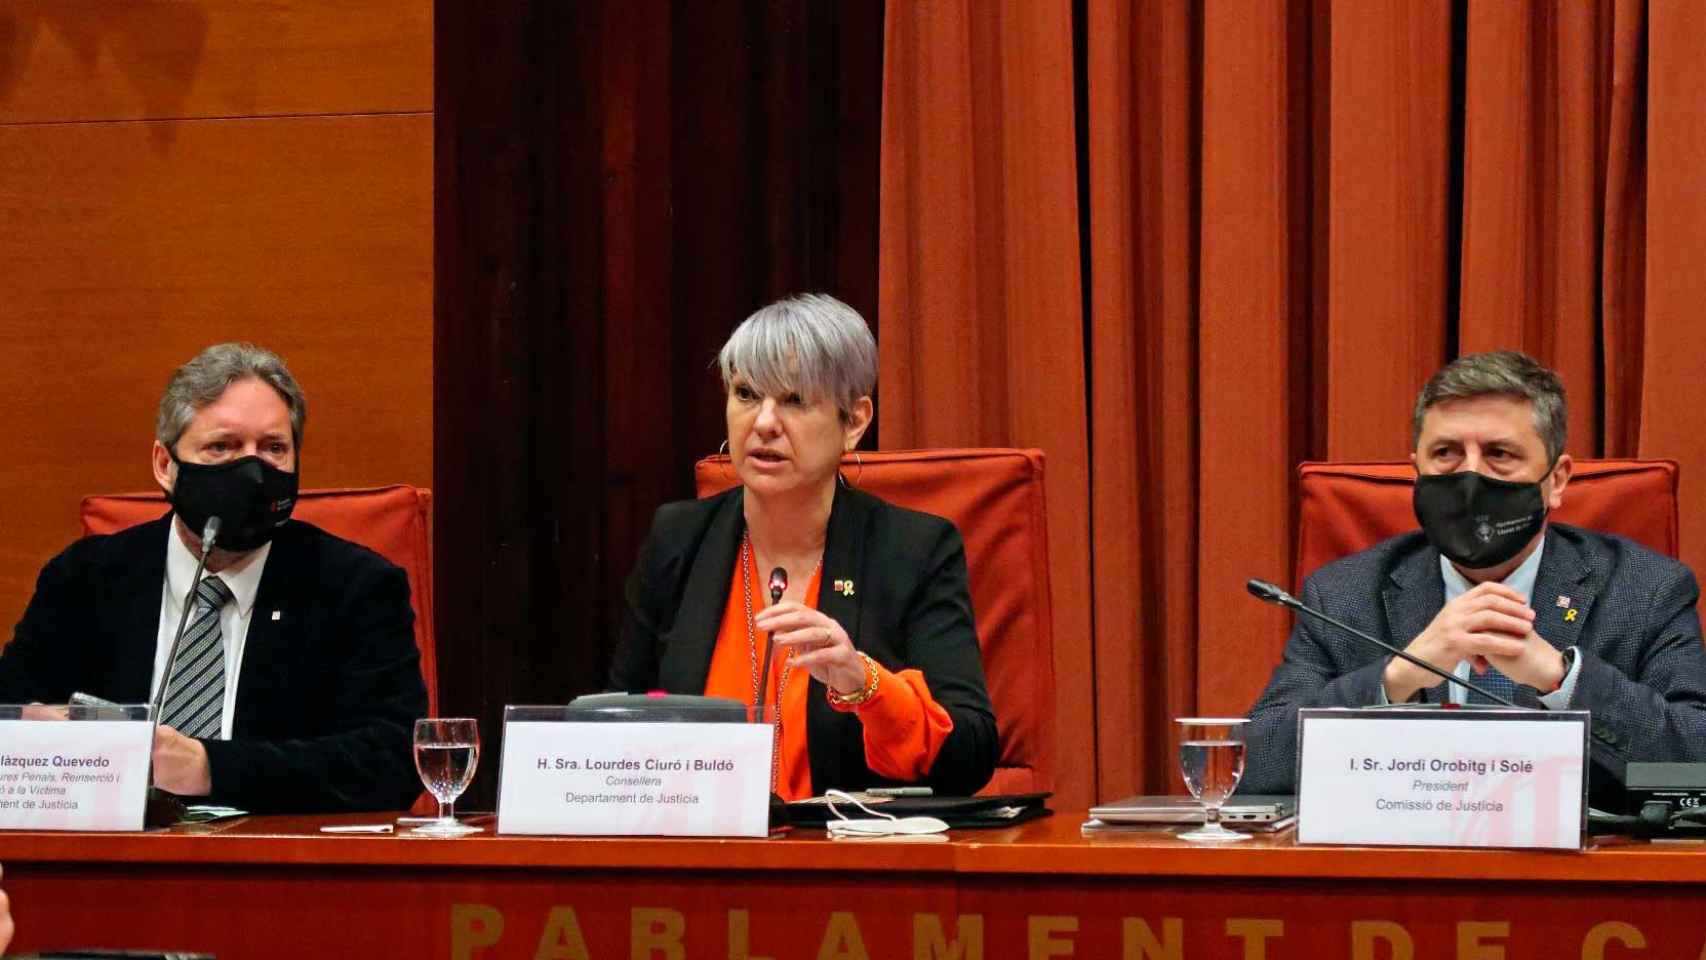 La 'consellera' de Justicia, Lourdes Ciuró, explica cómo reducir el riesgo de suicidio en las cárceles catalanas / PARLAMENT